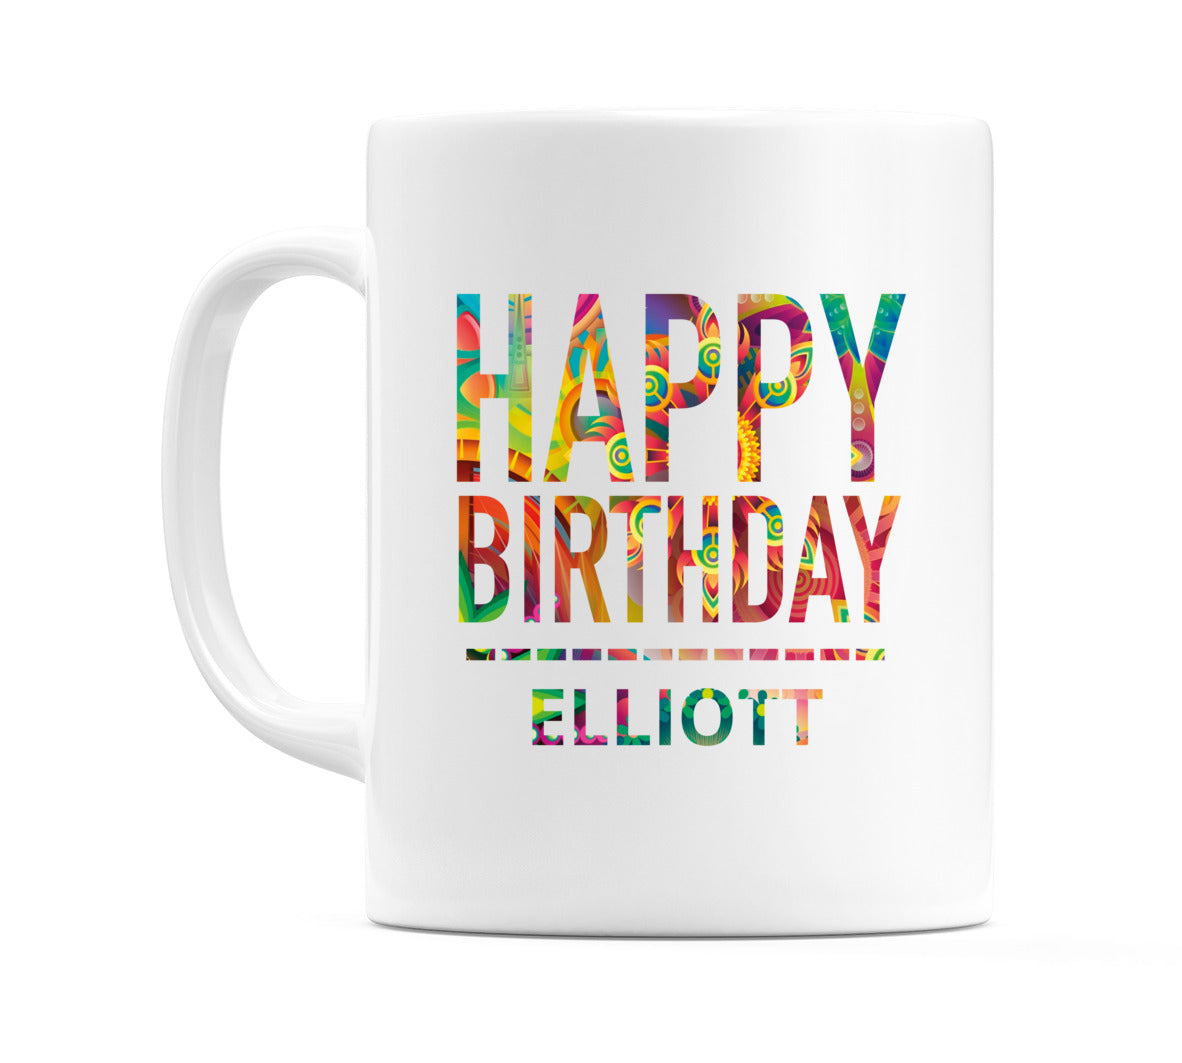 Happy Birthday Elliott (Tie Dye Effect) Mug Cup by WeDoMugs